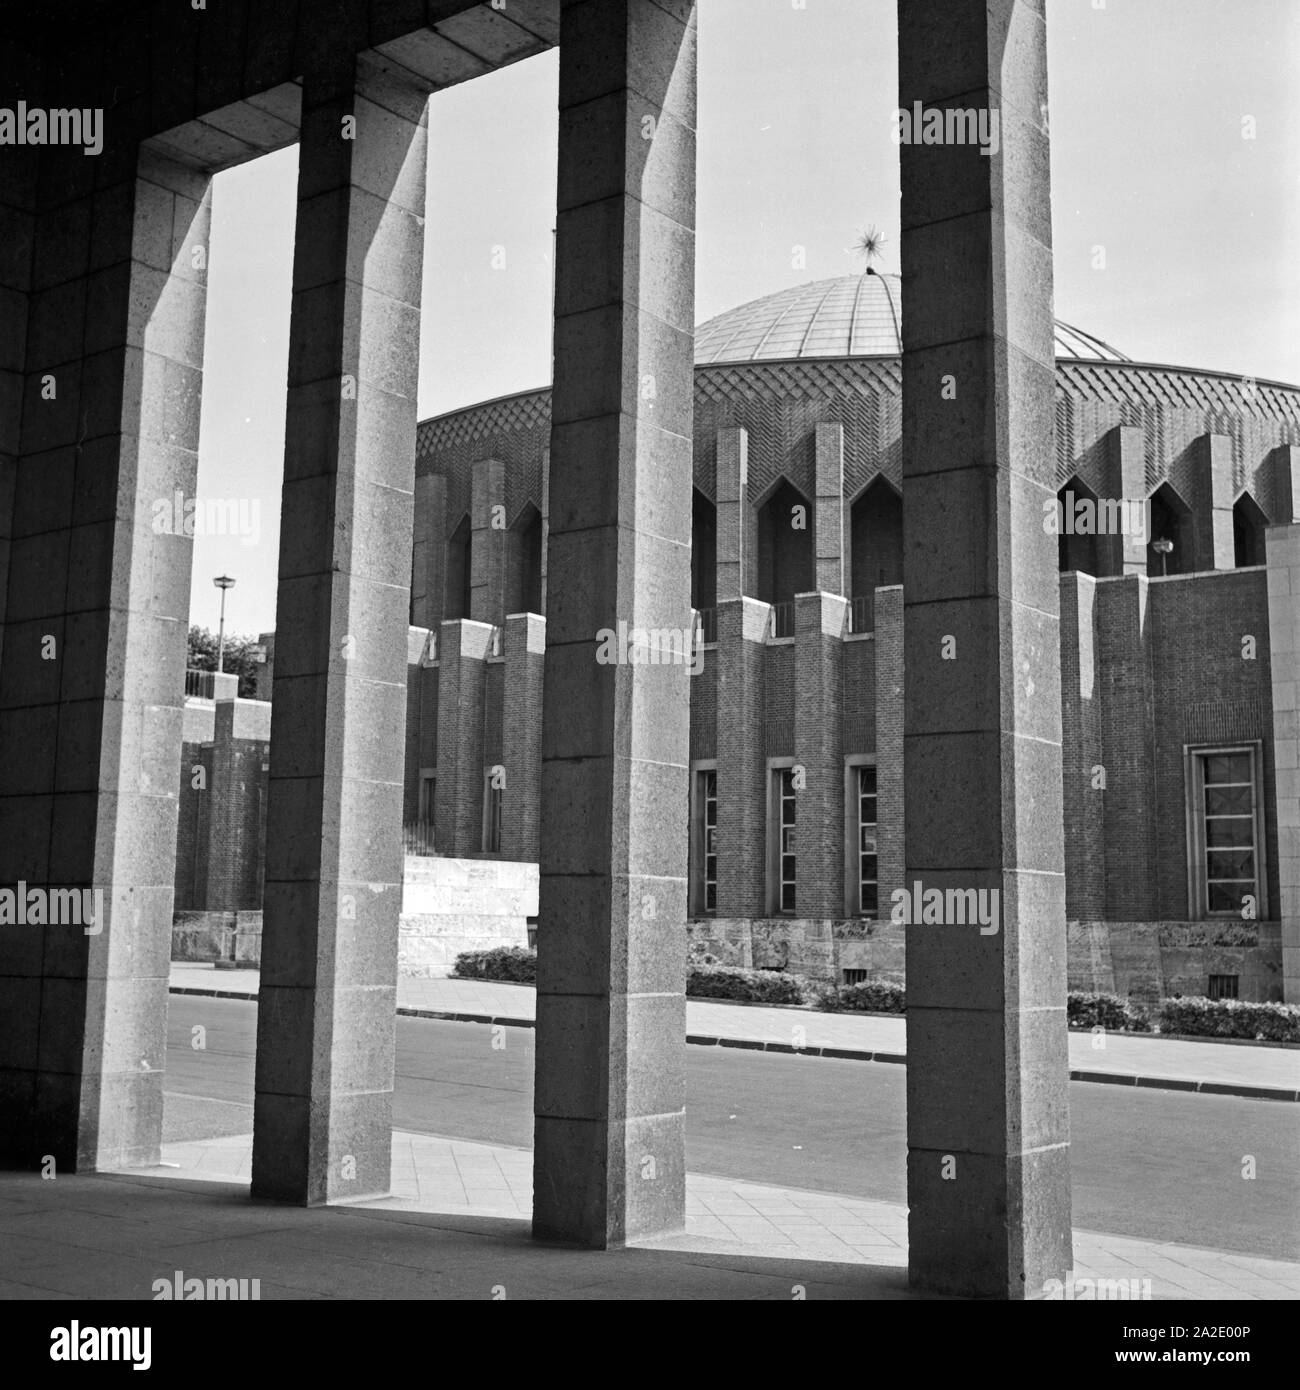 Das Planetarium in Düsseldorf, Deutschland 1930er Jahre. Duesseldorf planetarium, Germany 1930s. Stock Photo